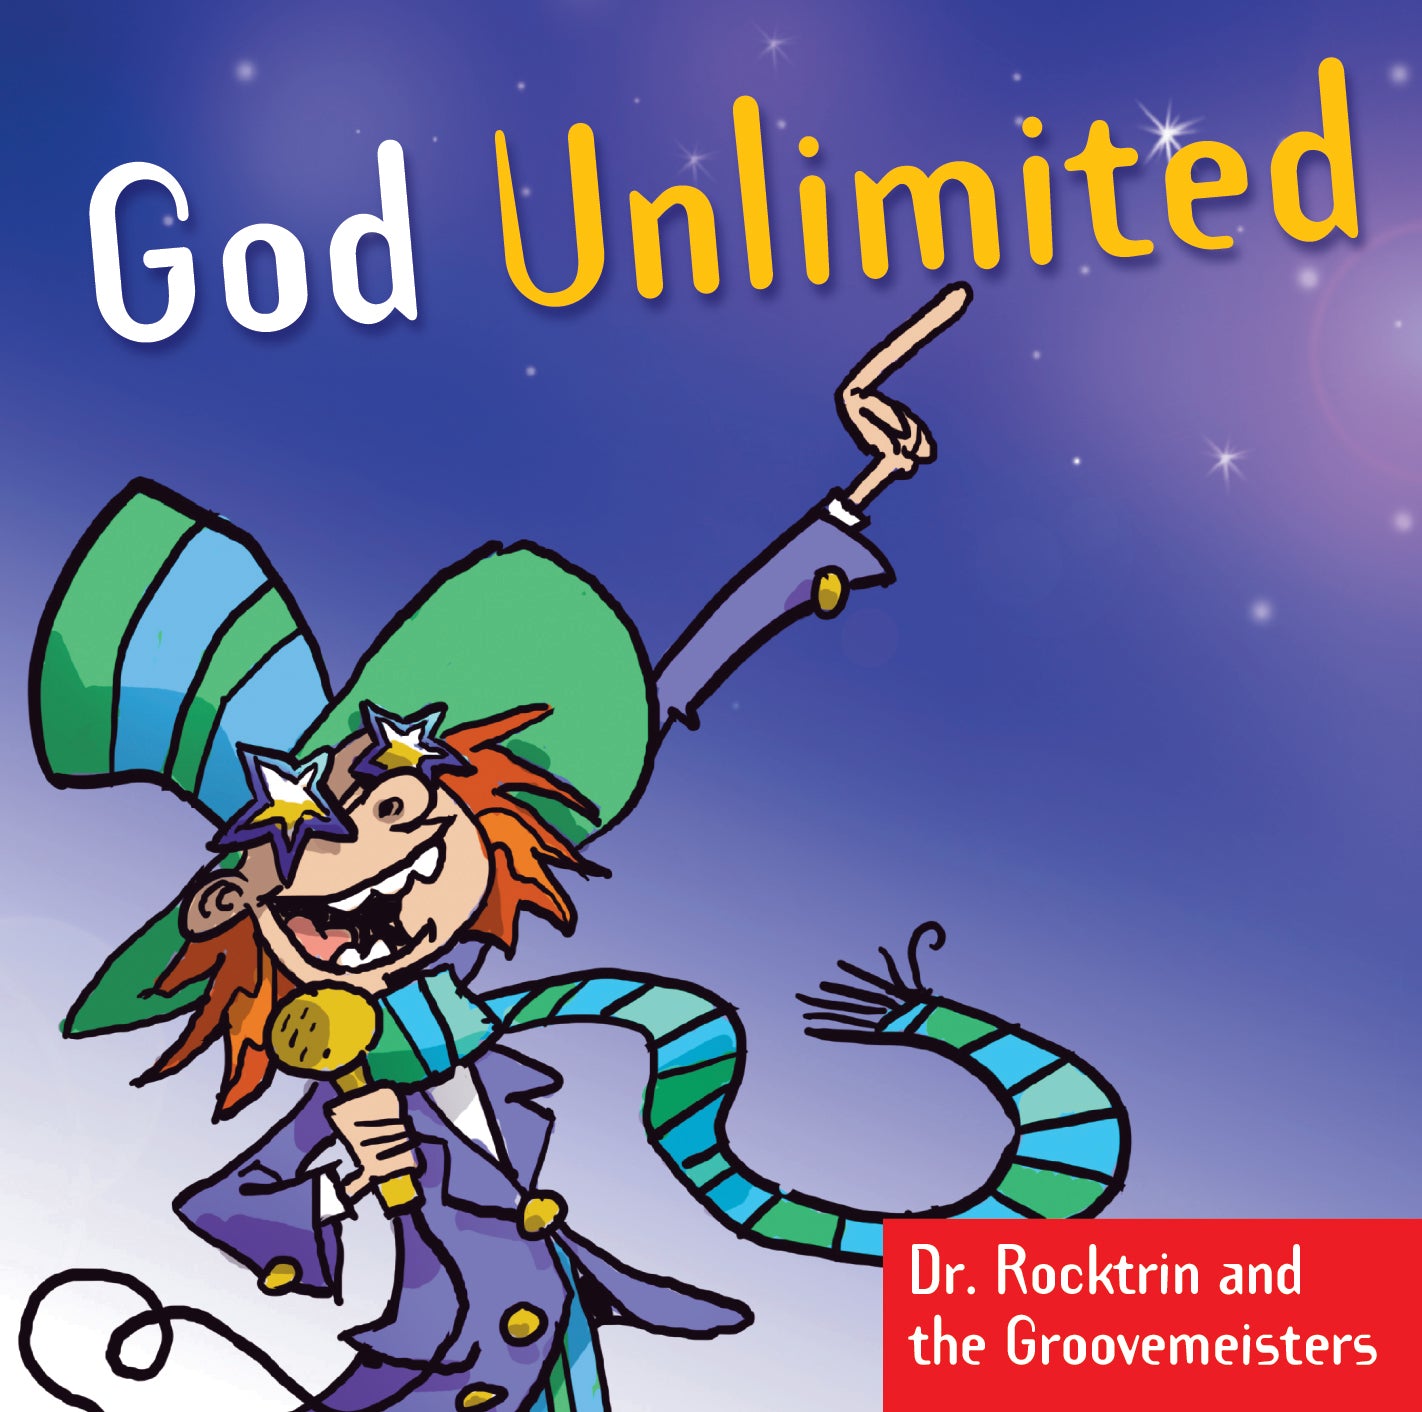 God Unlimited (Album)